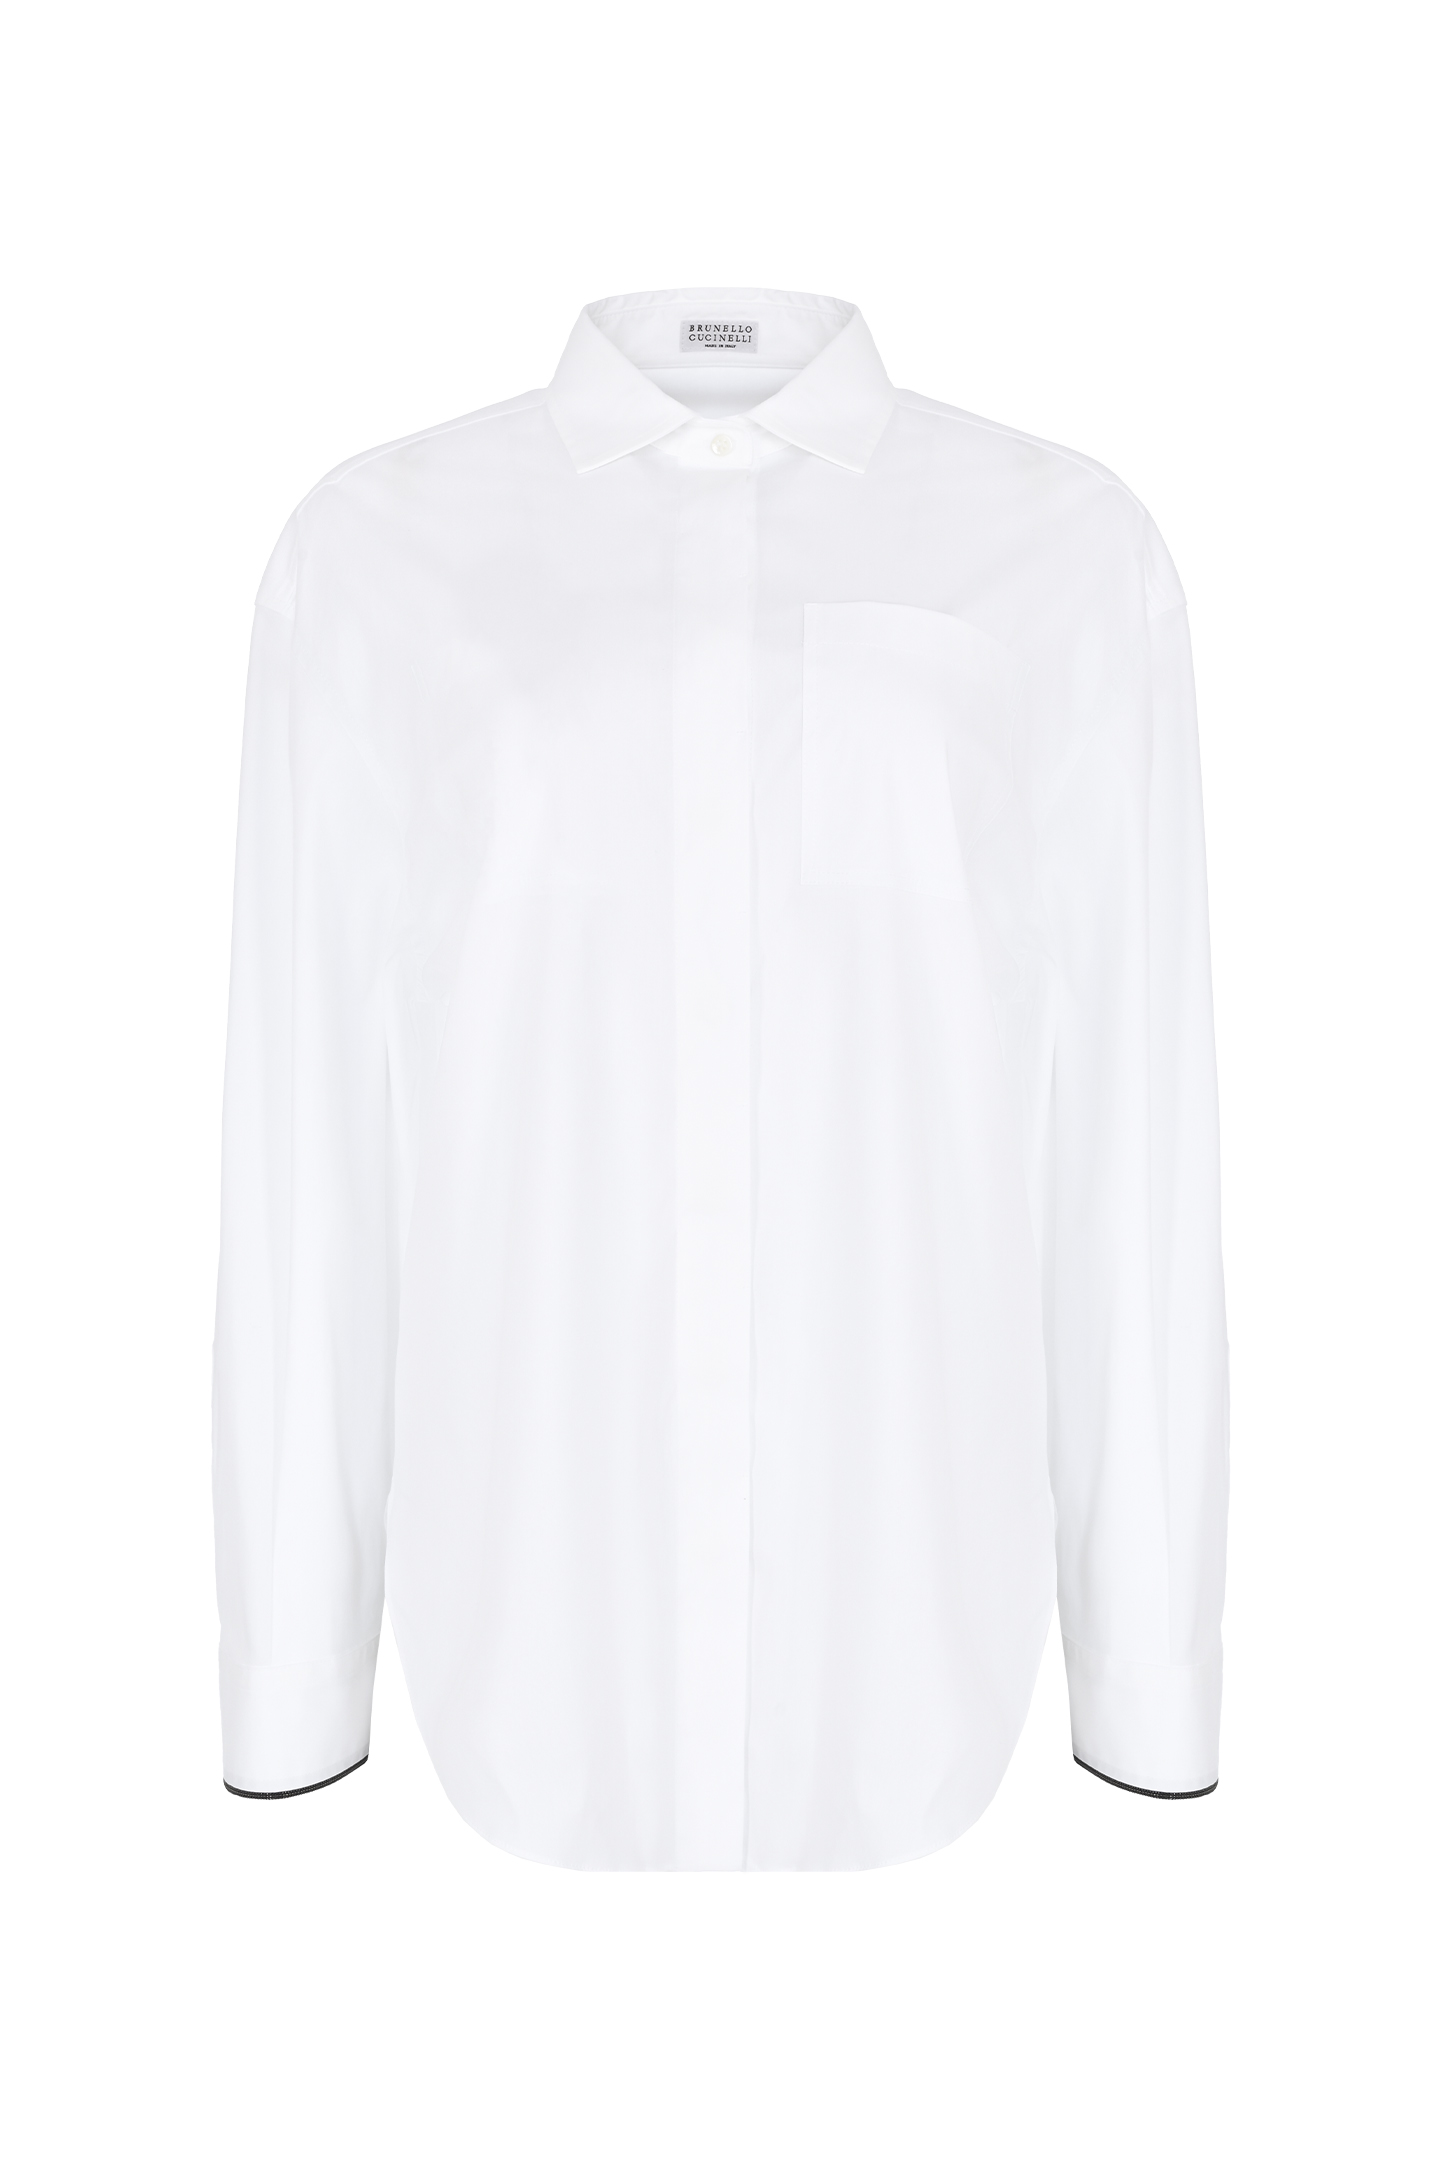 Хлопковая рубашка с эластаном BRUNELLO  CUCINELLI M0091MK956, цвет: Белый, Женский